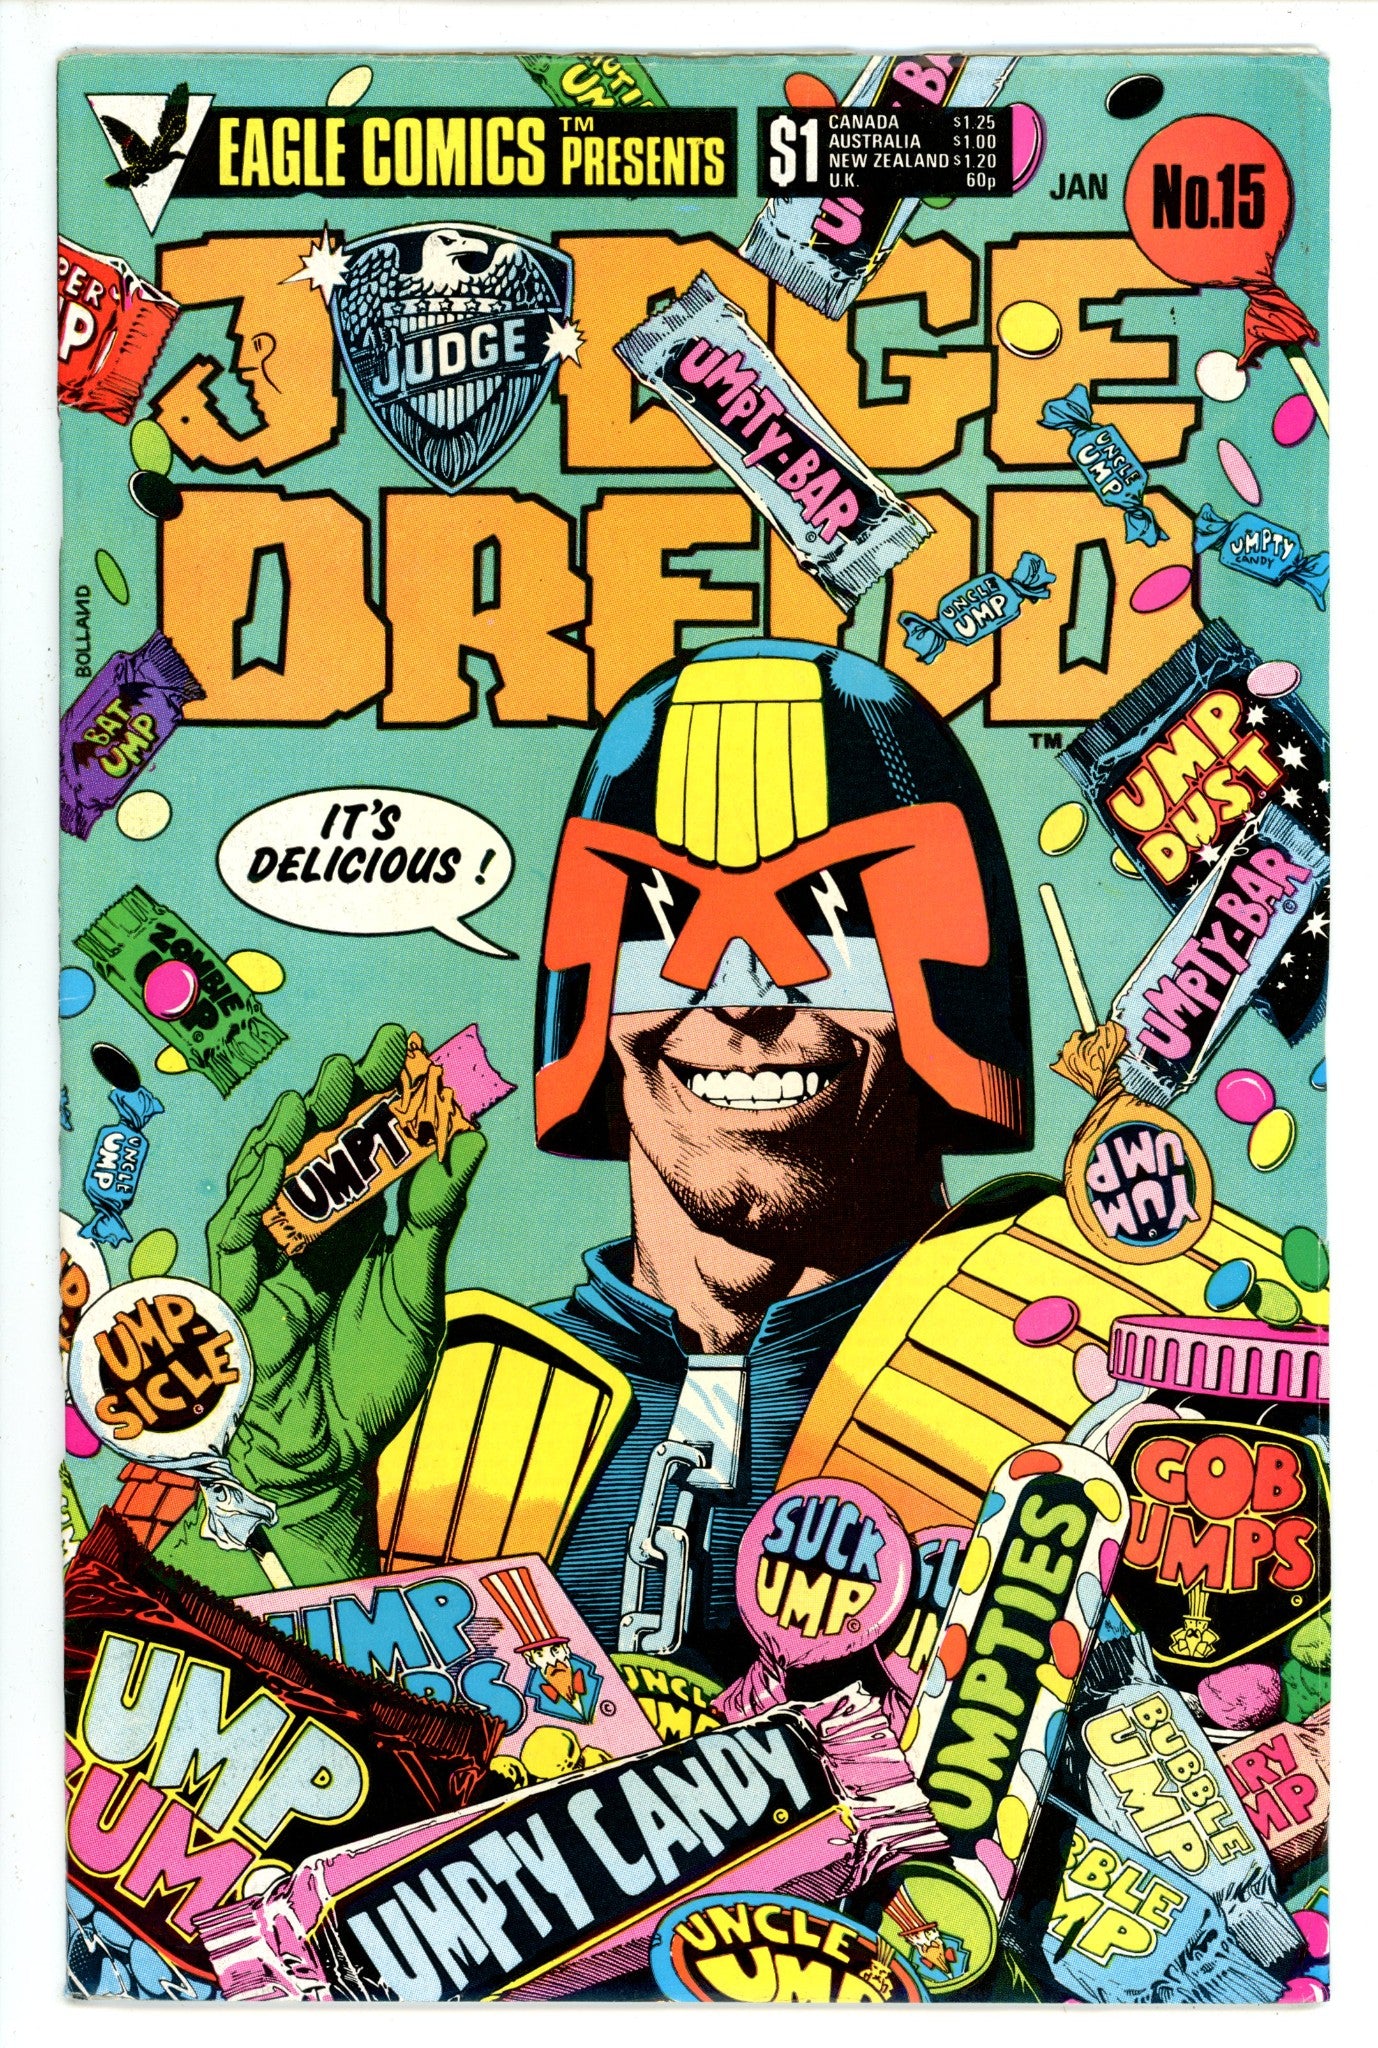 Judge Dredd Vol 1 15 (1985)